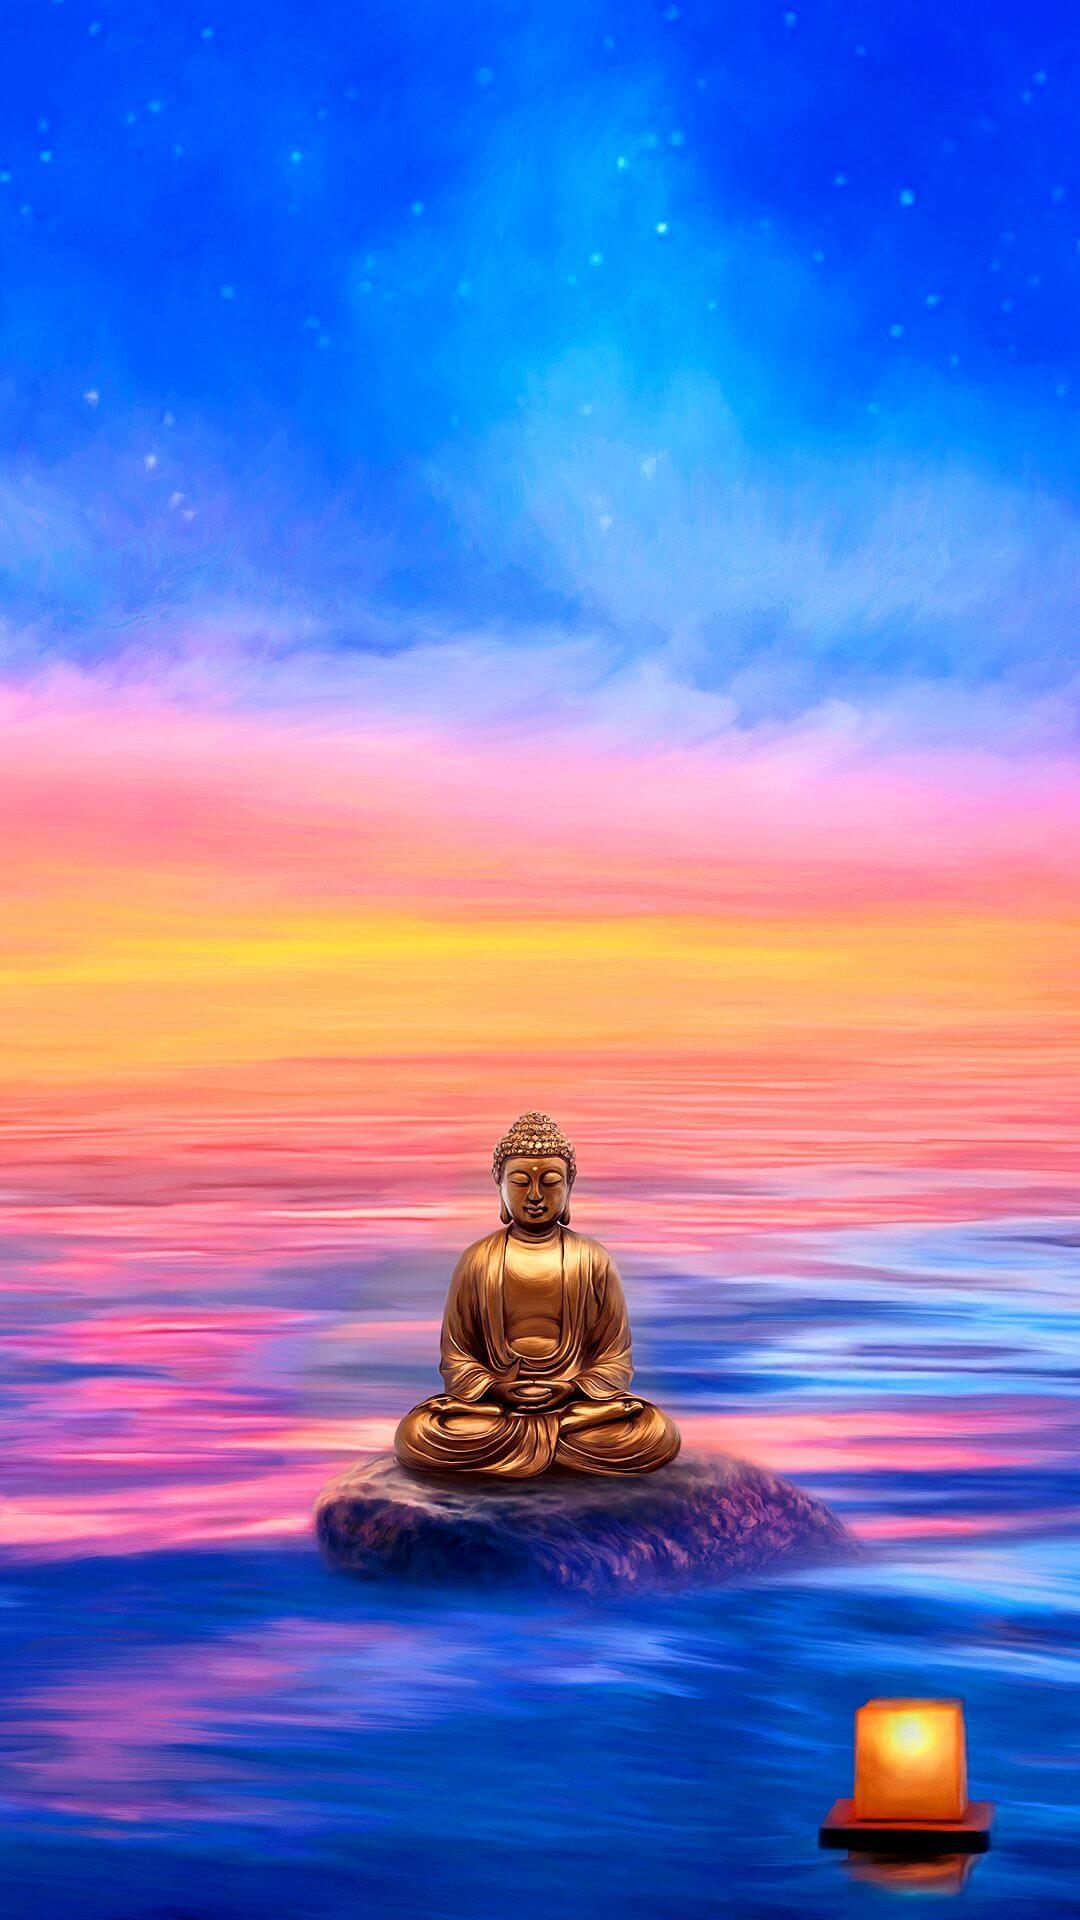 Hình nền Phật 3D: Bạn yêu thích nghệ thuật và sự trang trí độc đáo cho chiếc điện thoại của mình? Hãy thử xem ngay hình nền Phật 3D độc đáo và tuyệt vời này! Đây là một trong những mẫu hình nền đẹp và hiếm hoi, mang đến cho bạn sự tĩnh tâm và thanh tịnh khi nhìn vào thiên nhiên và những hình ảnh Phật giáo đầy ý nghĩa.